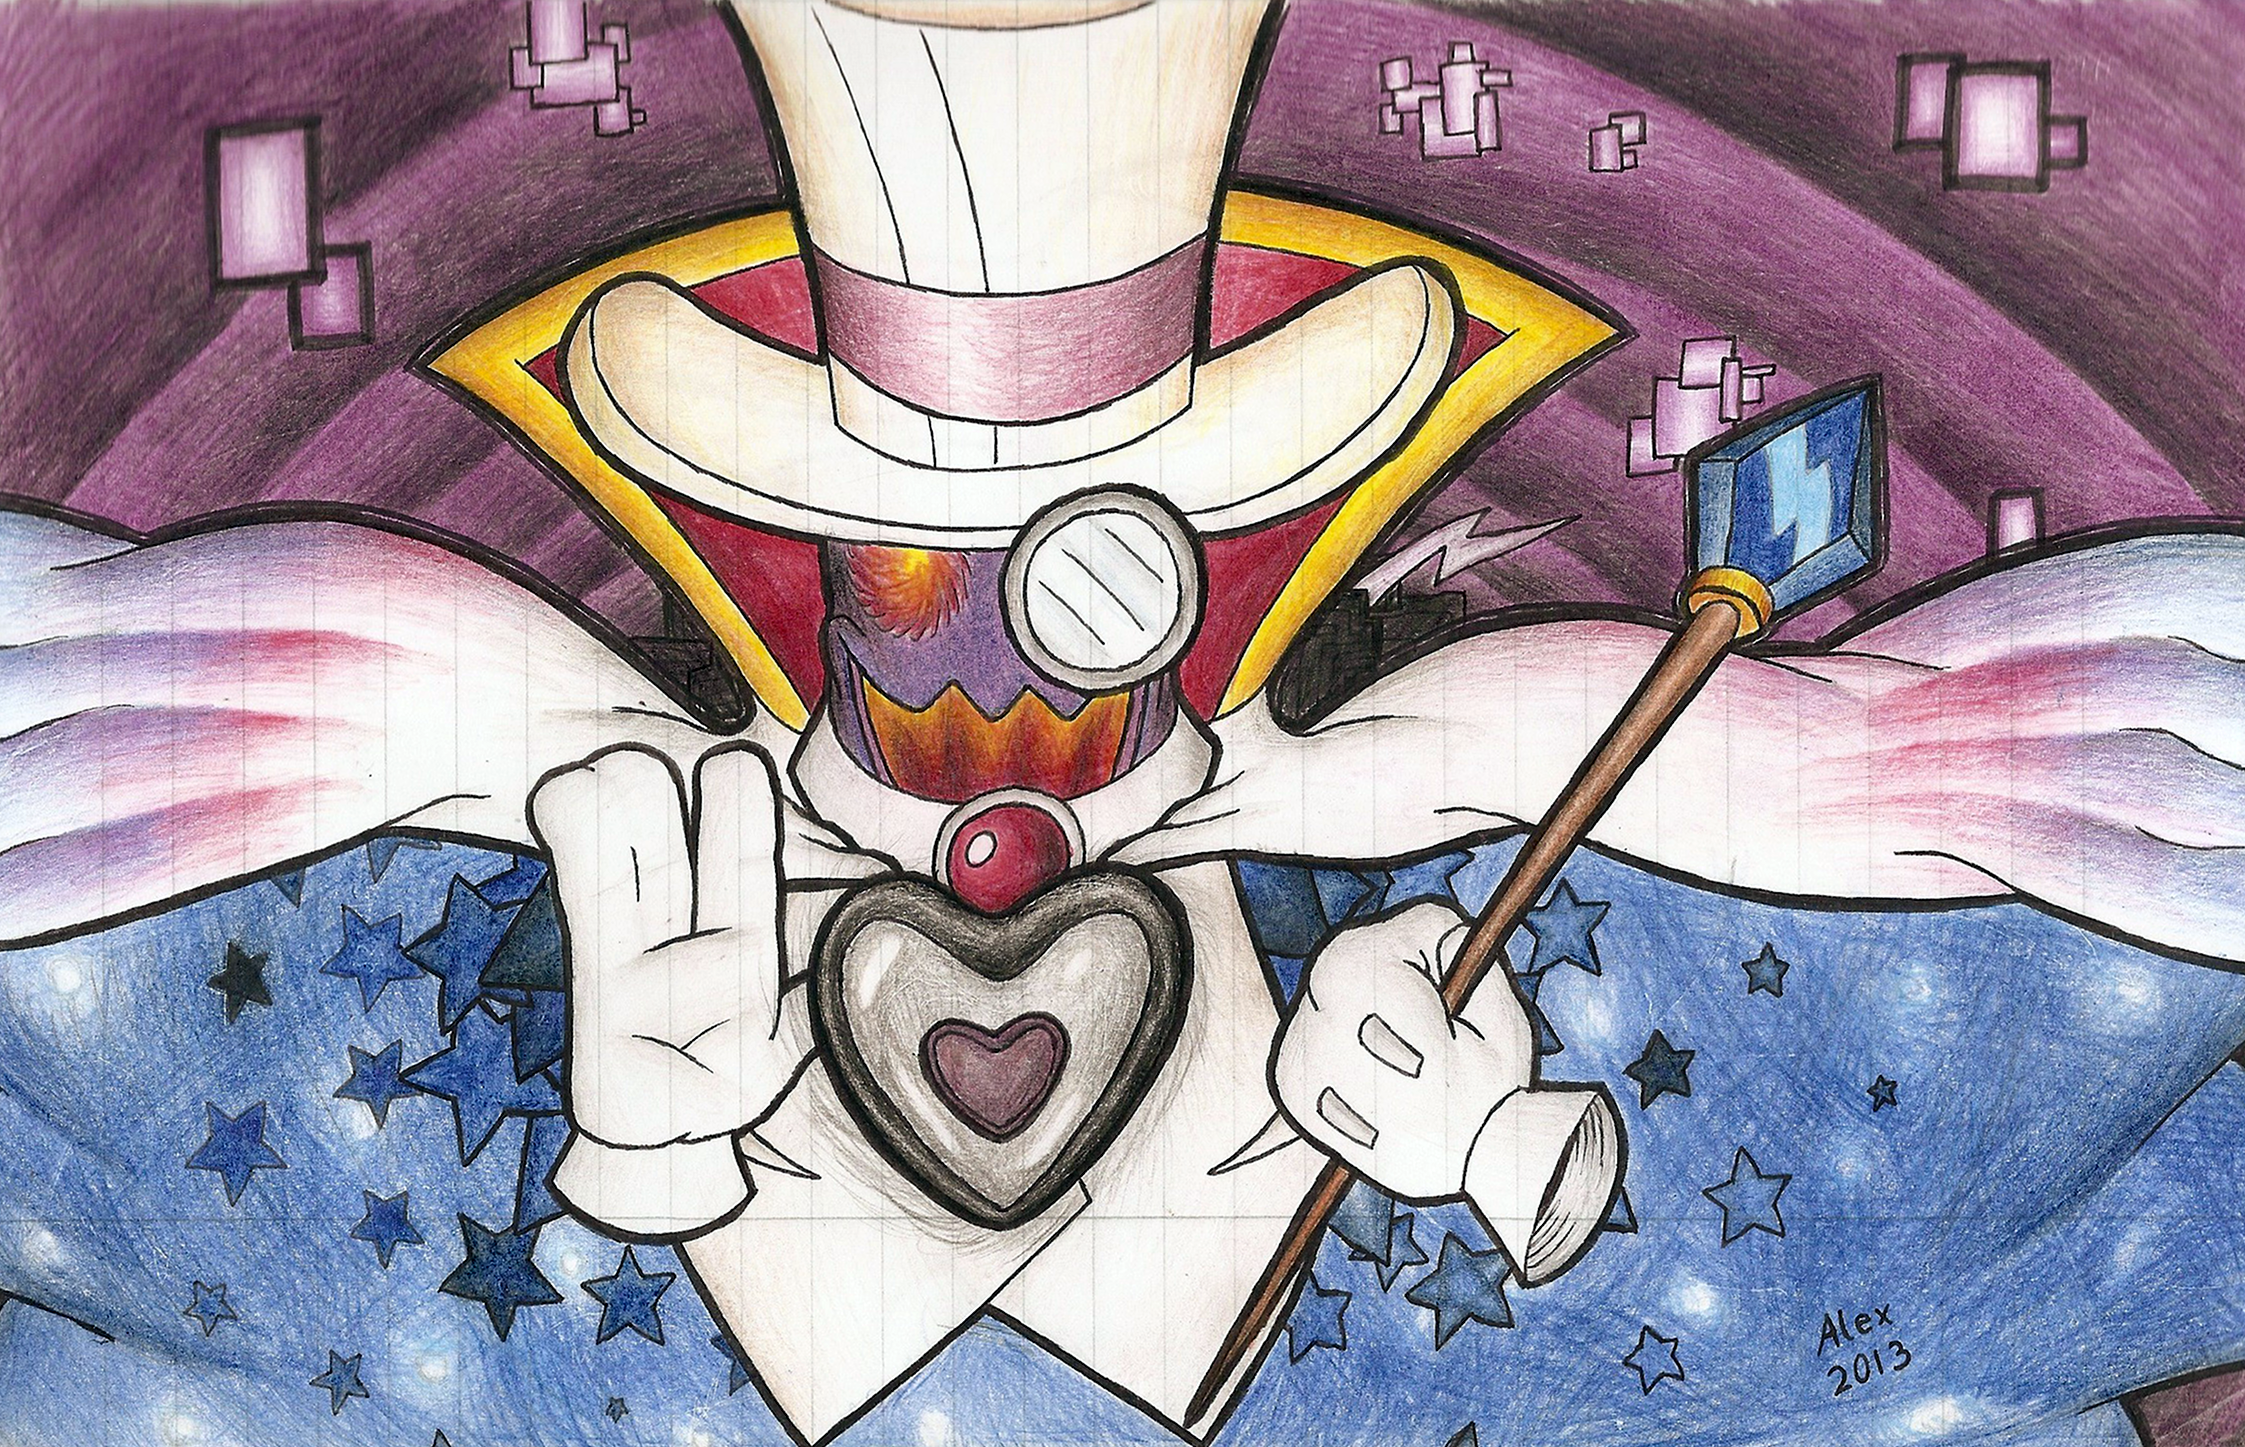 Count Bleck (Super Paper Mario)